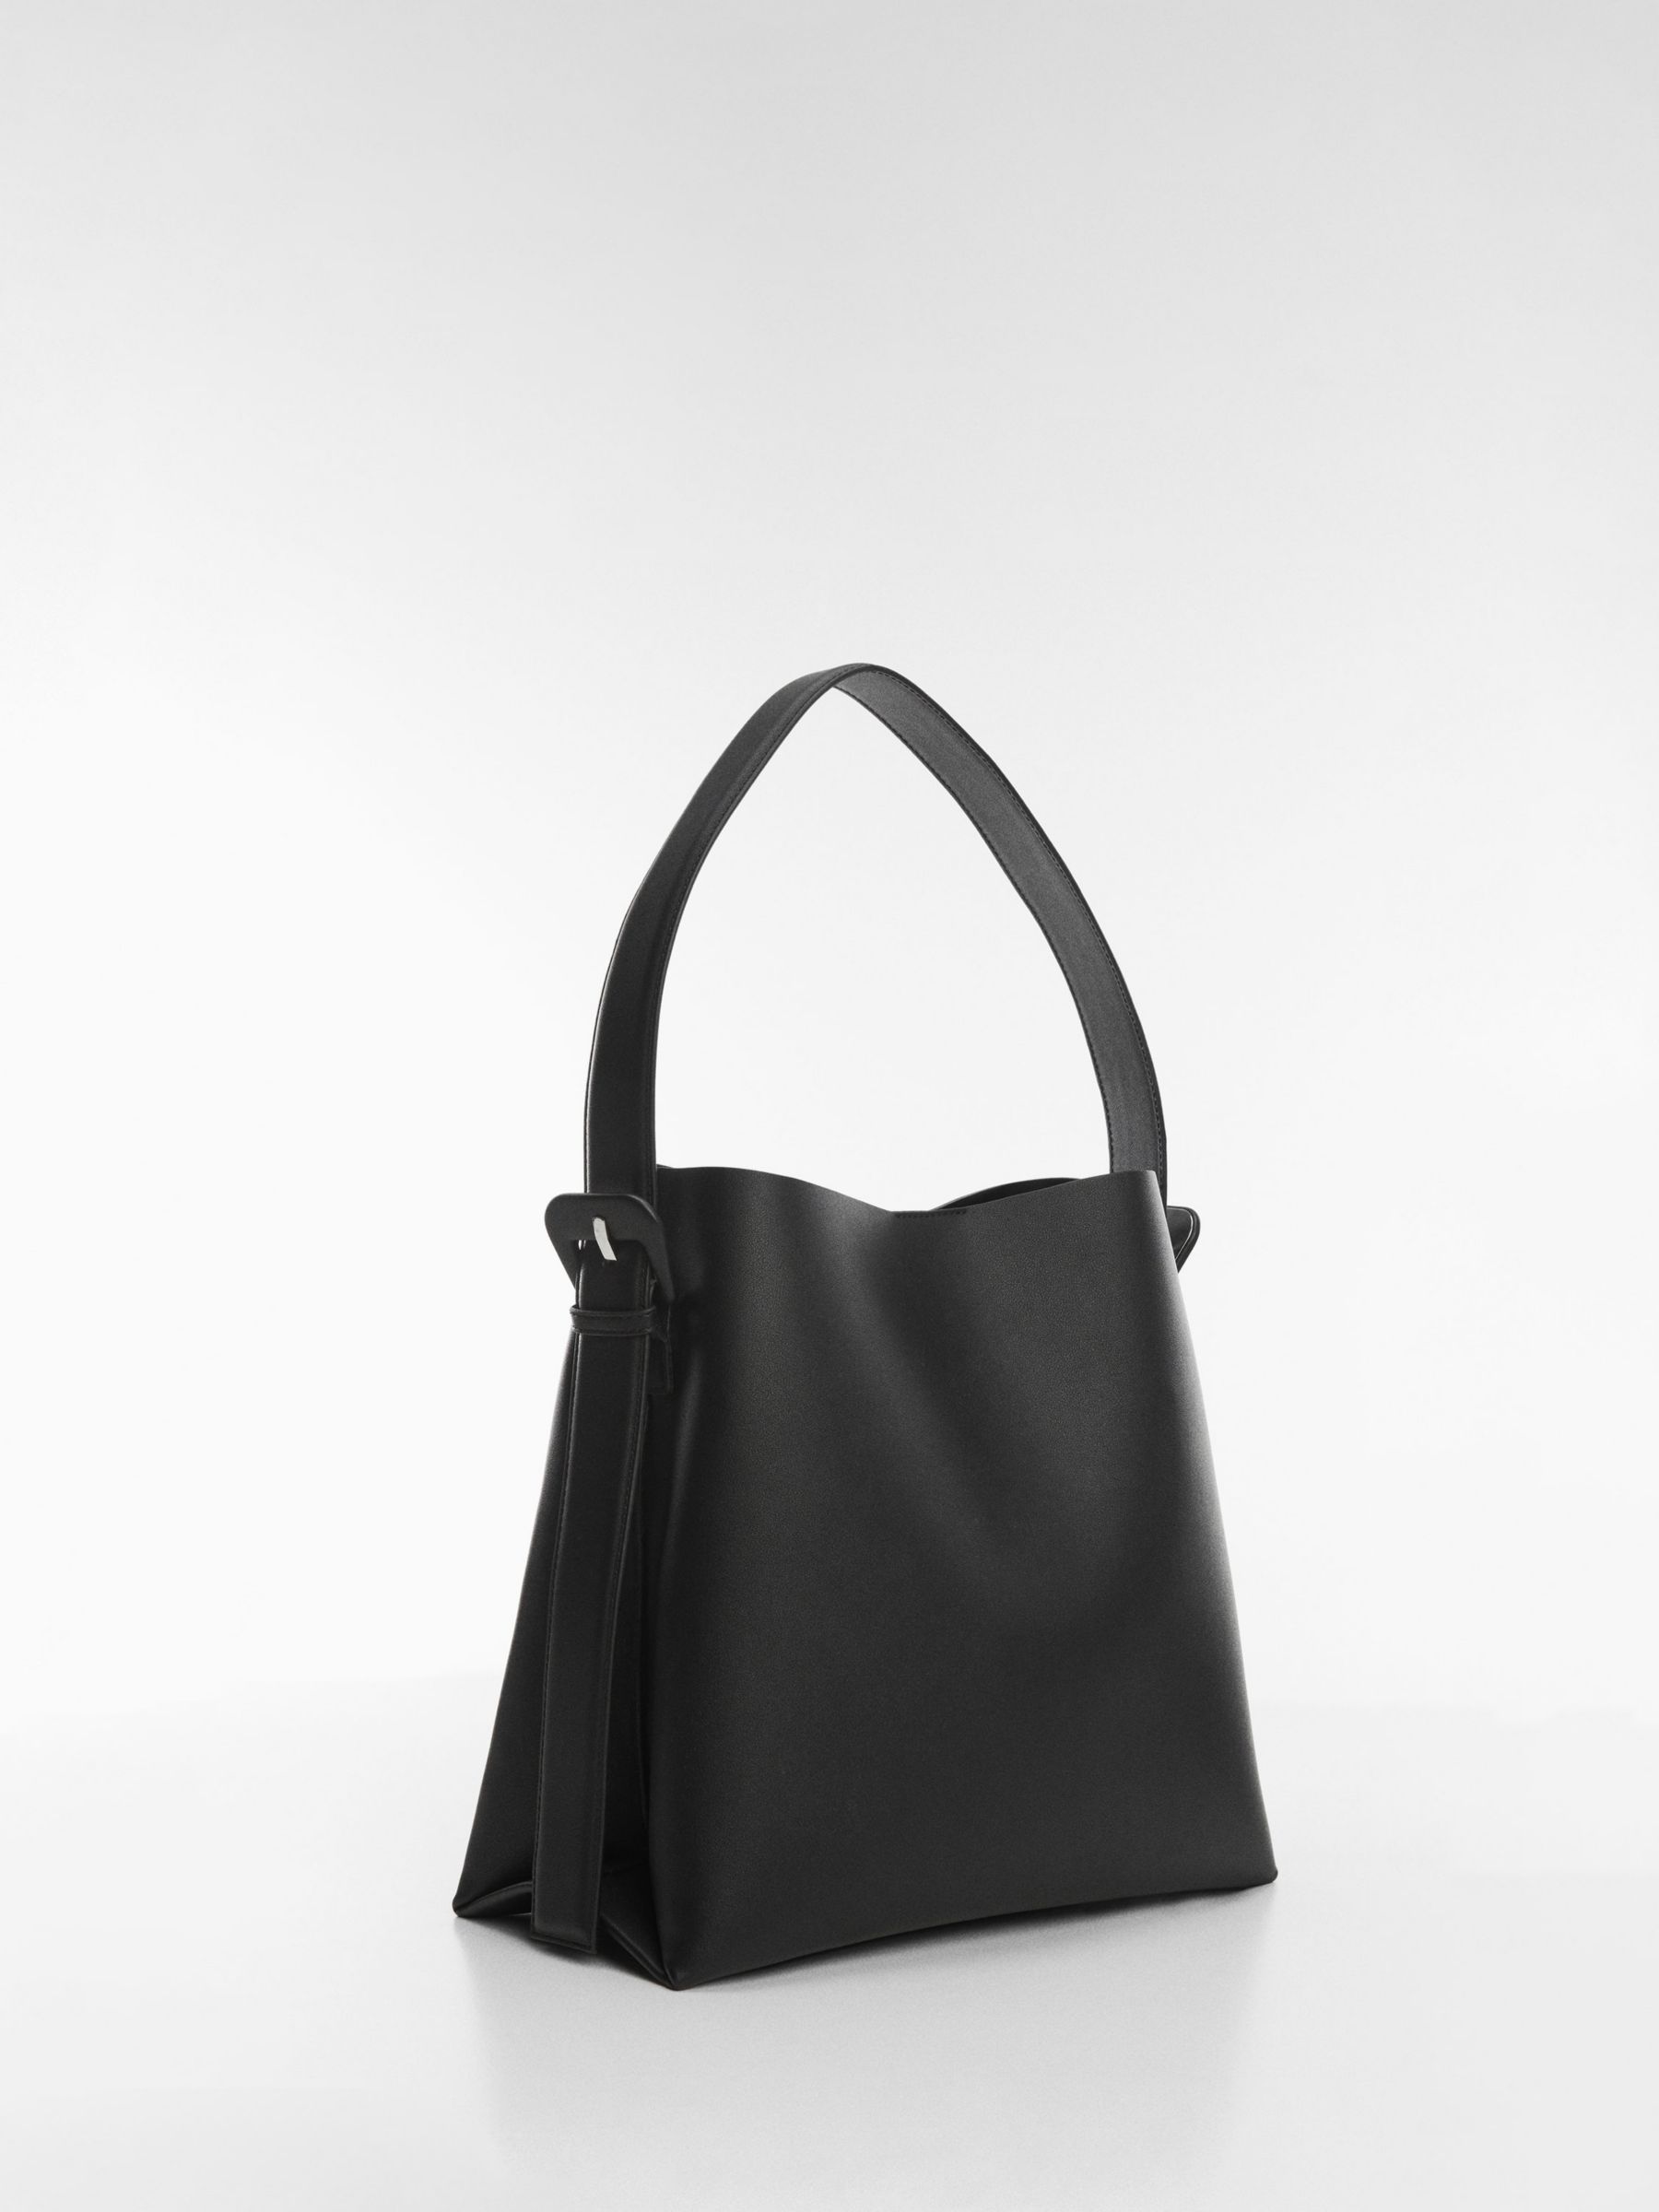 Mango Lucia Large Shoulder Bag, Black at John Lewis & Partners